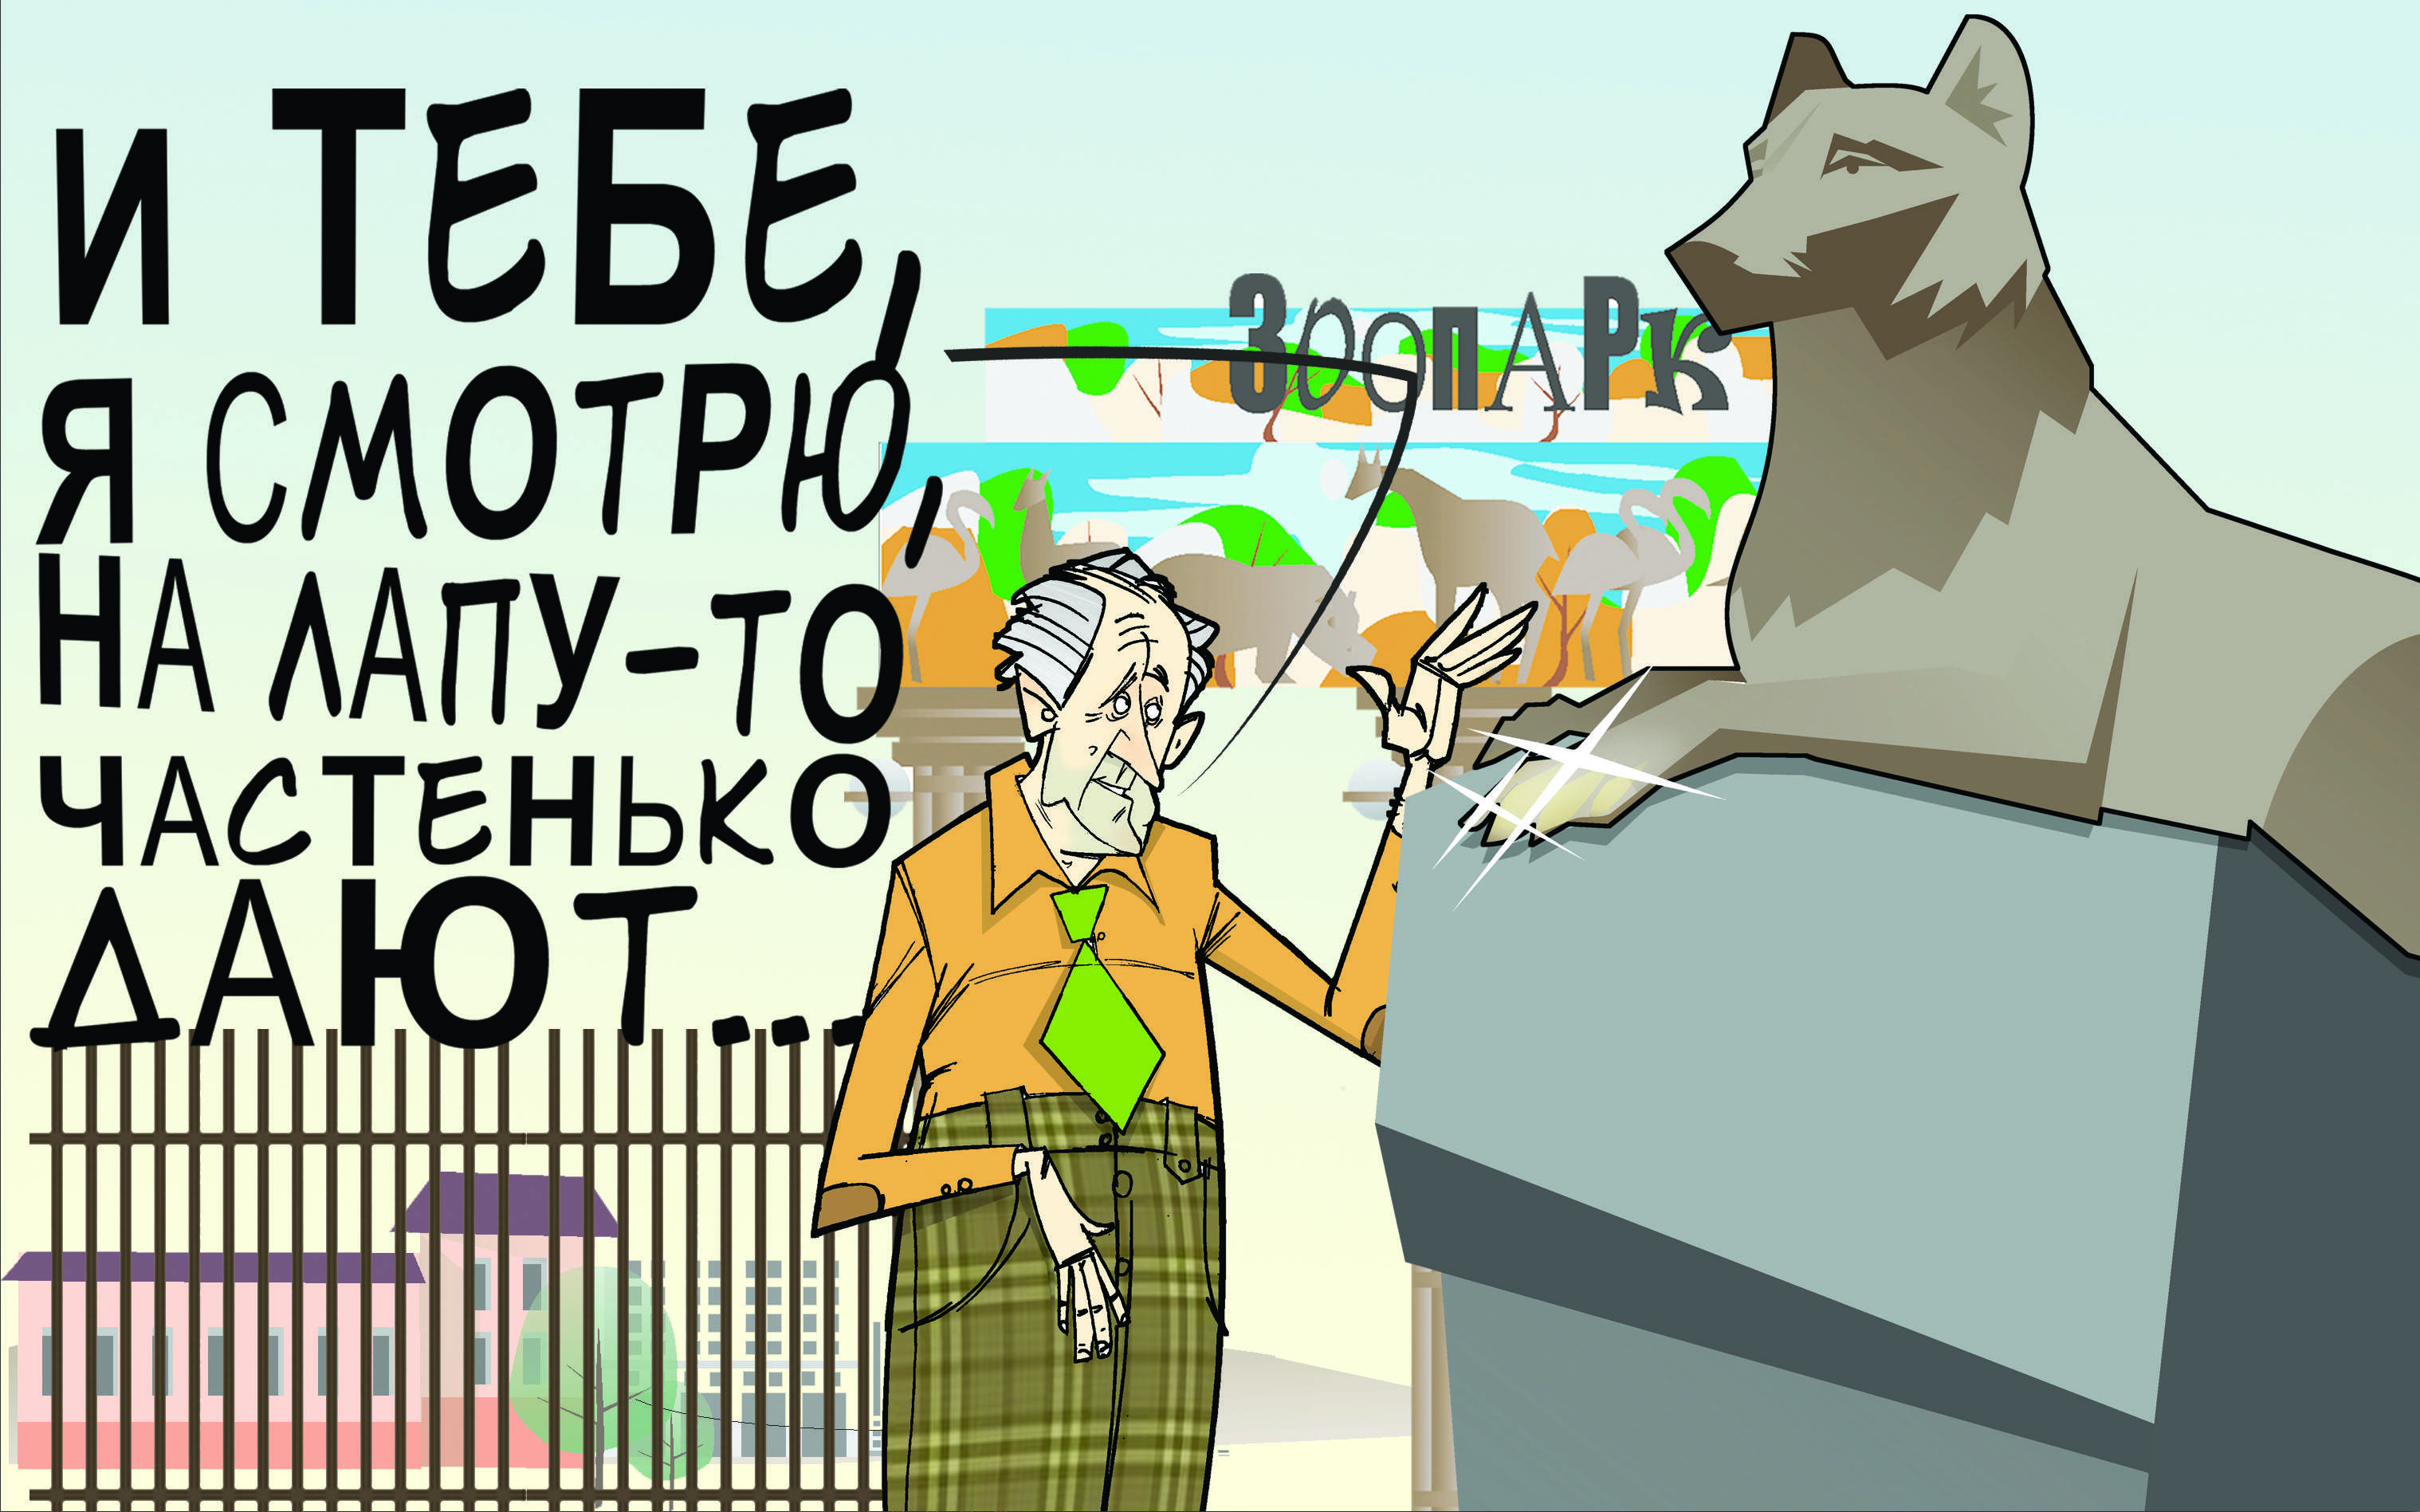 Кому на лапу дают. #ПрезидентУР #Волков #зоопарк © Газета "День" 2013